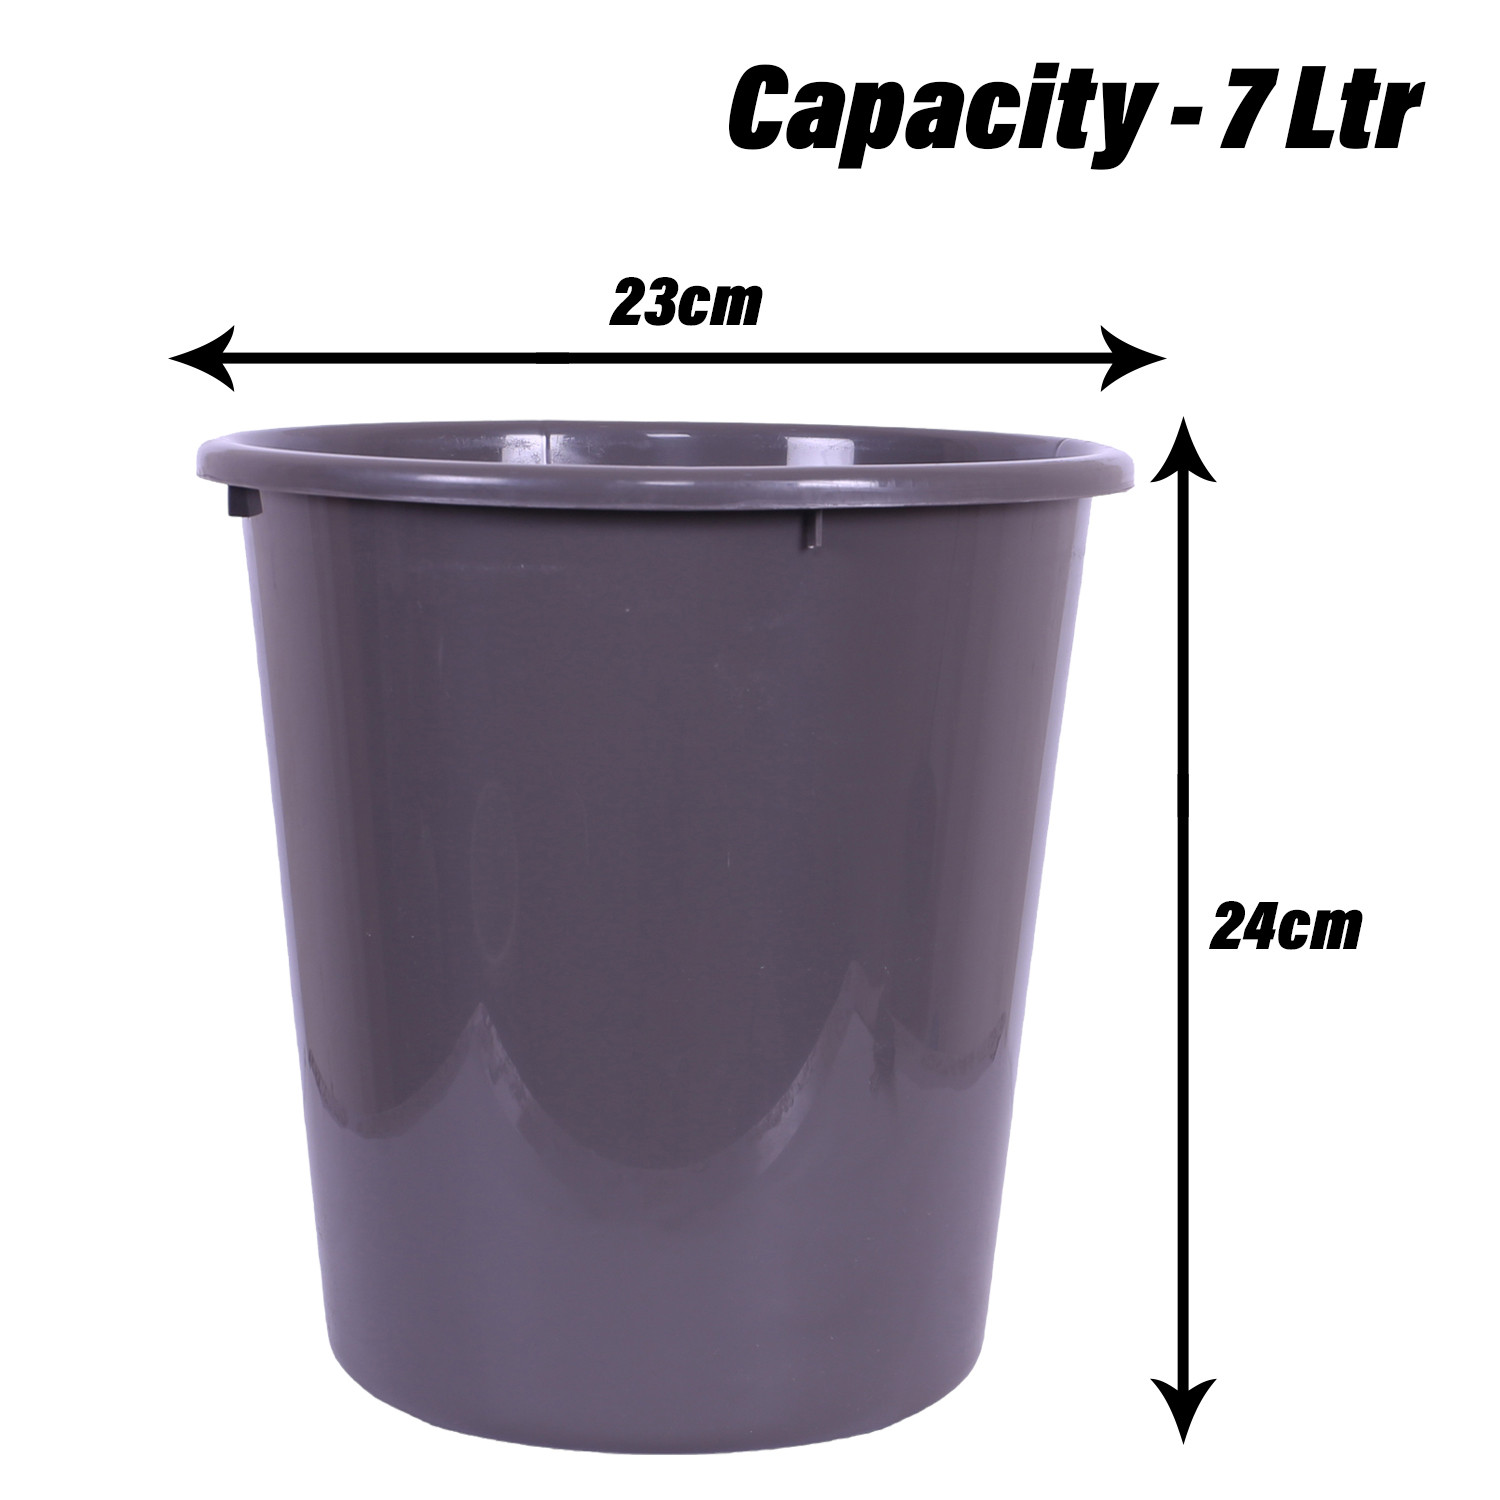 Kuber Industries Dustbin | Open Dustbin | Plastic Garbage Dustbin | Dustbin For Kitchen | Dustbin For Bathroom | Office Dustbin | Plain Sada Dustbin | 7 LTR | 066 | Gray